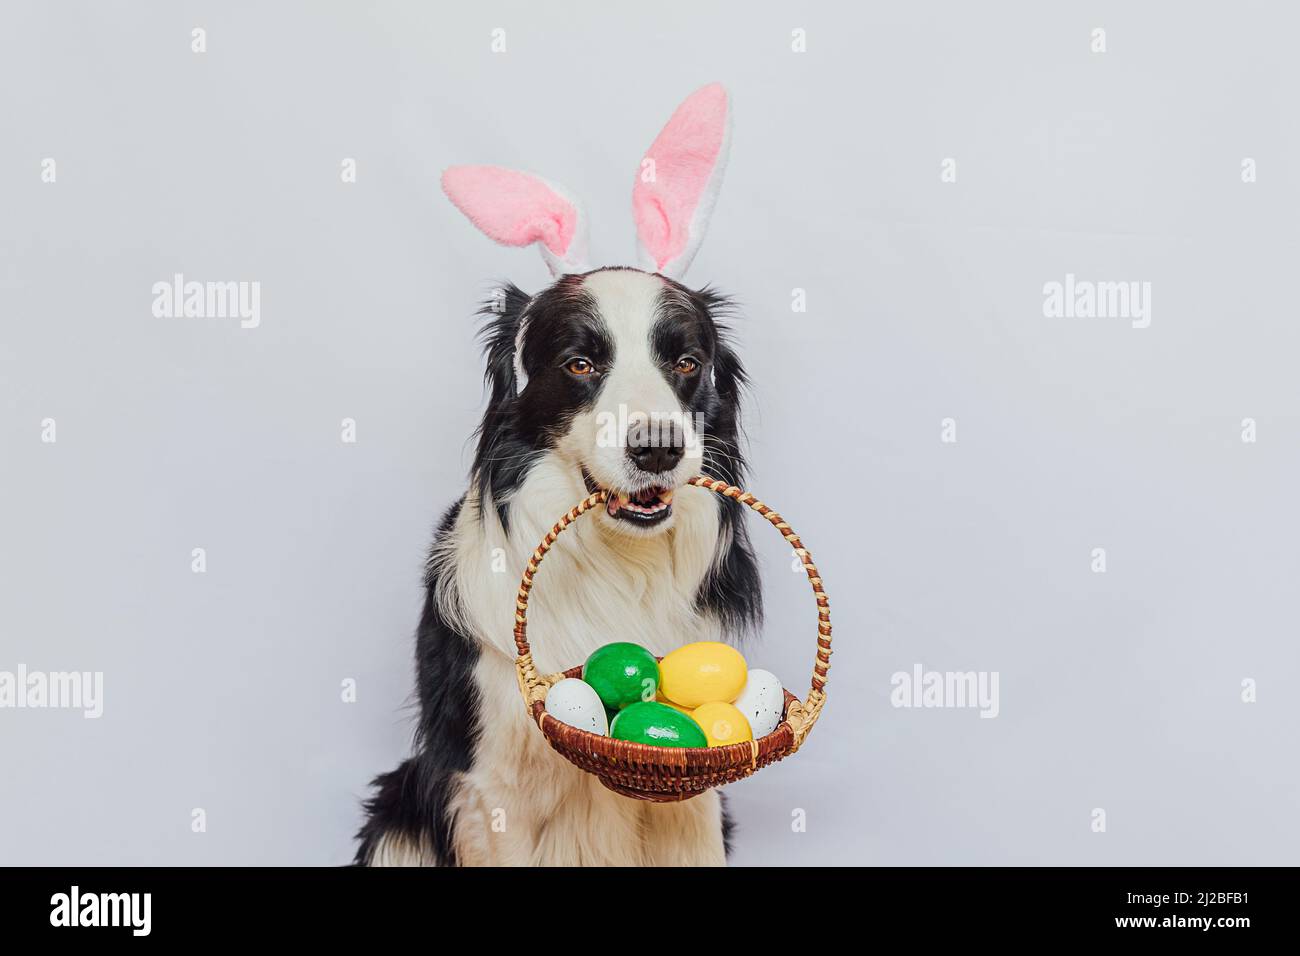 Happy Easter Konzept. Vorbereitung auf den Urlaub. Niedlichen Welpen Hund Grenze Collie trägt Hasenohren halten Korb mit Ostern bunte Eier im Mund isoliert auf weißem Hintergrund. Grußkarte aus dem Frühling Stockfoto